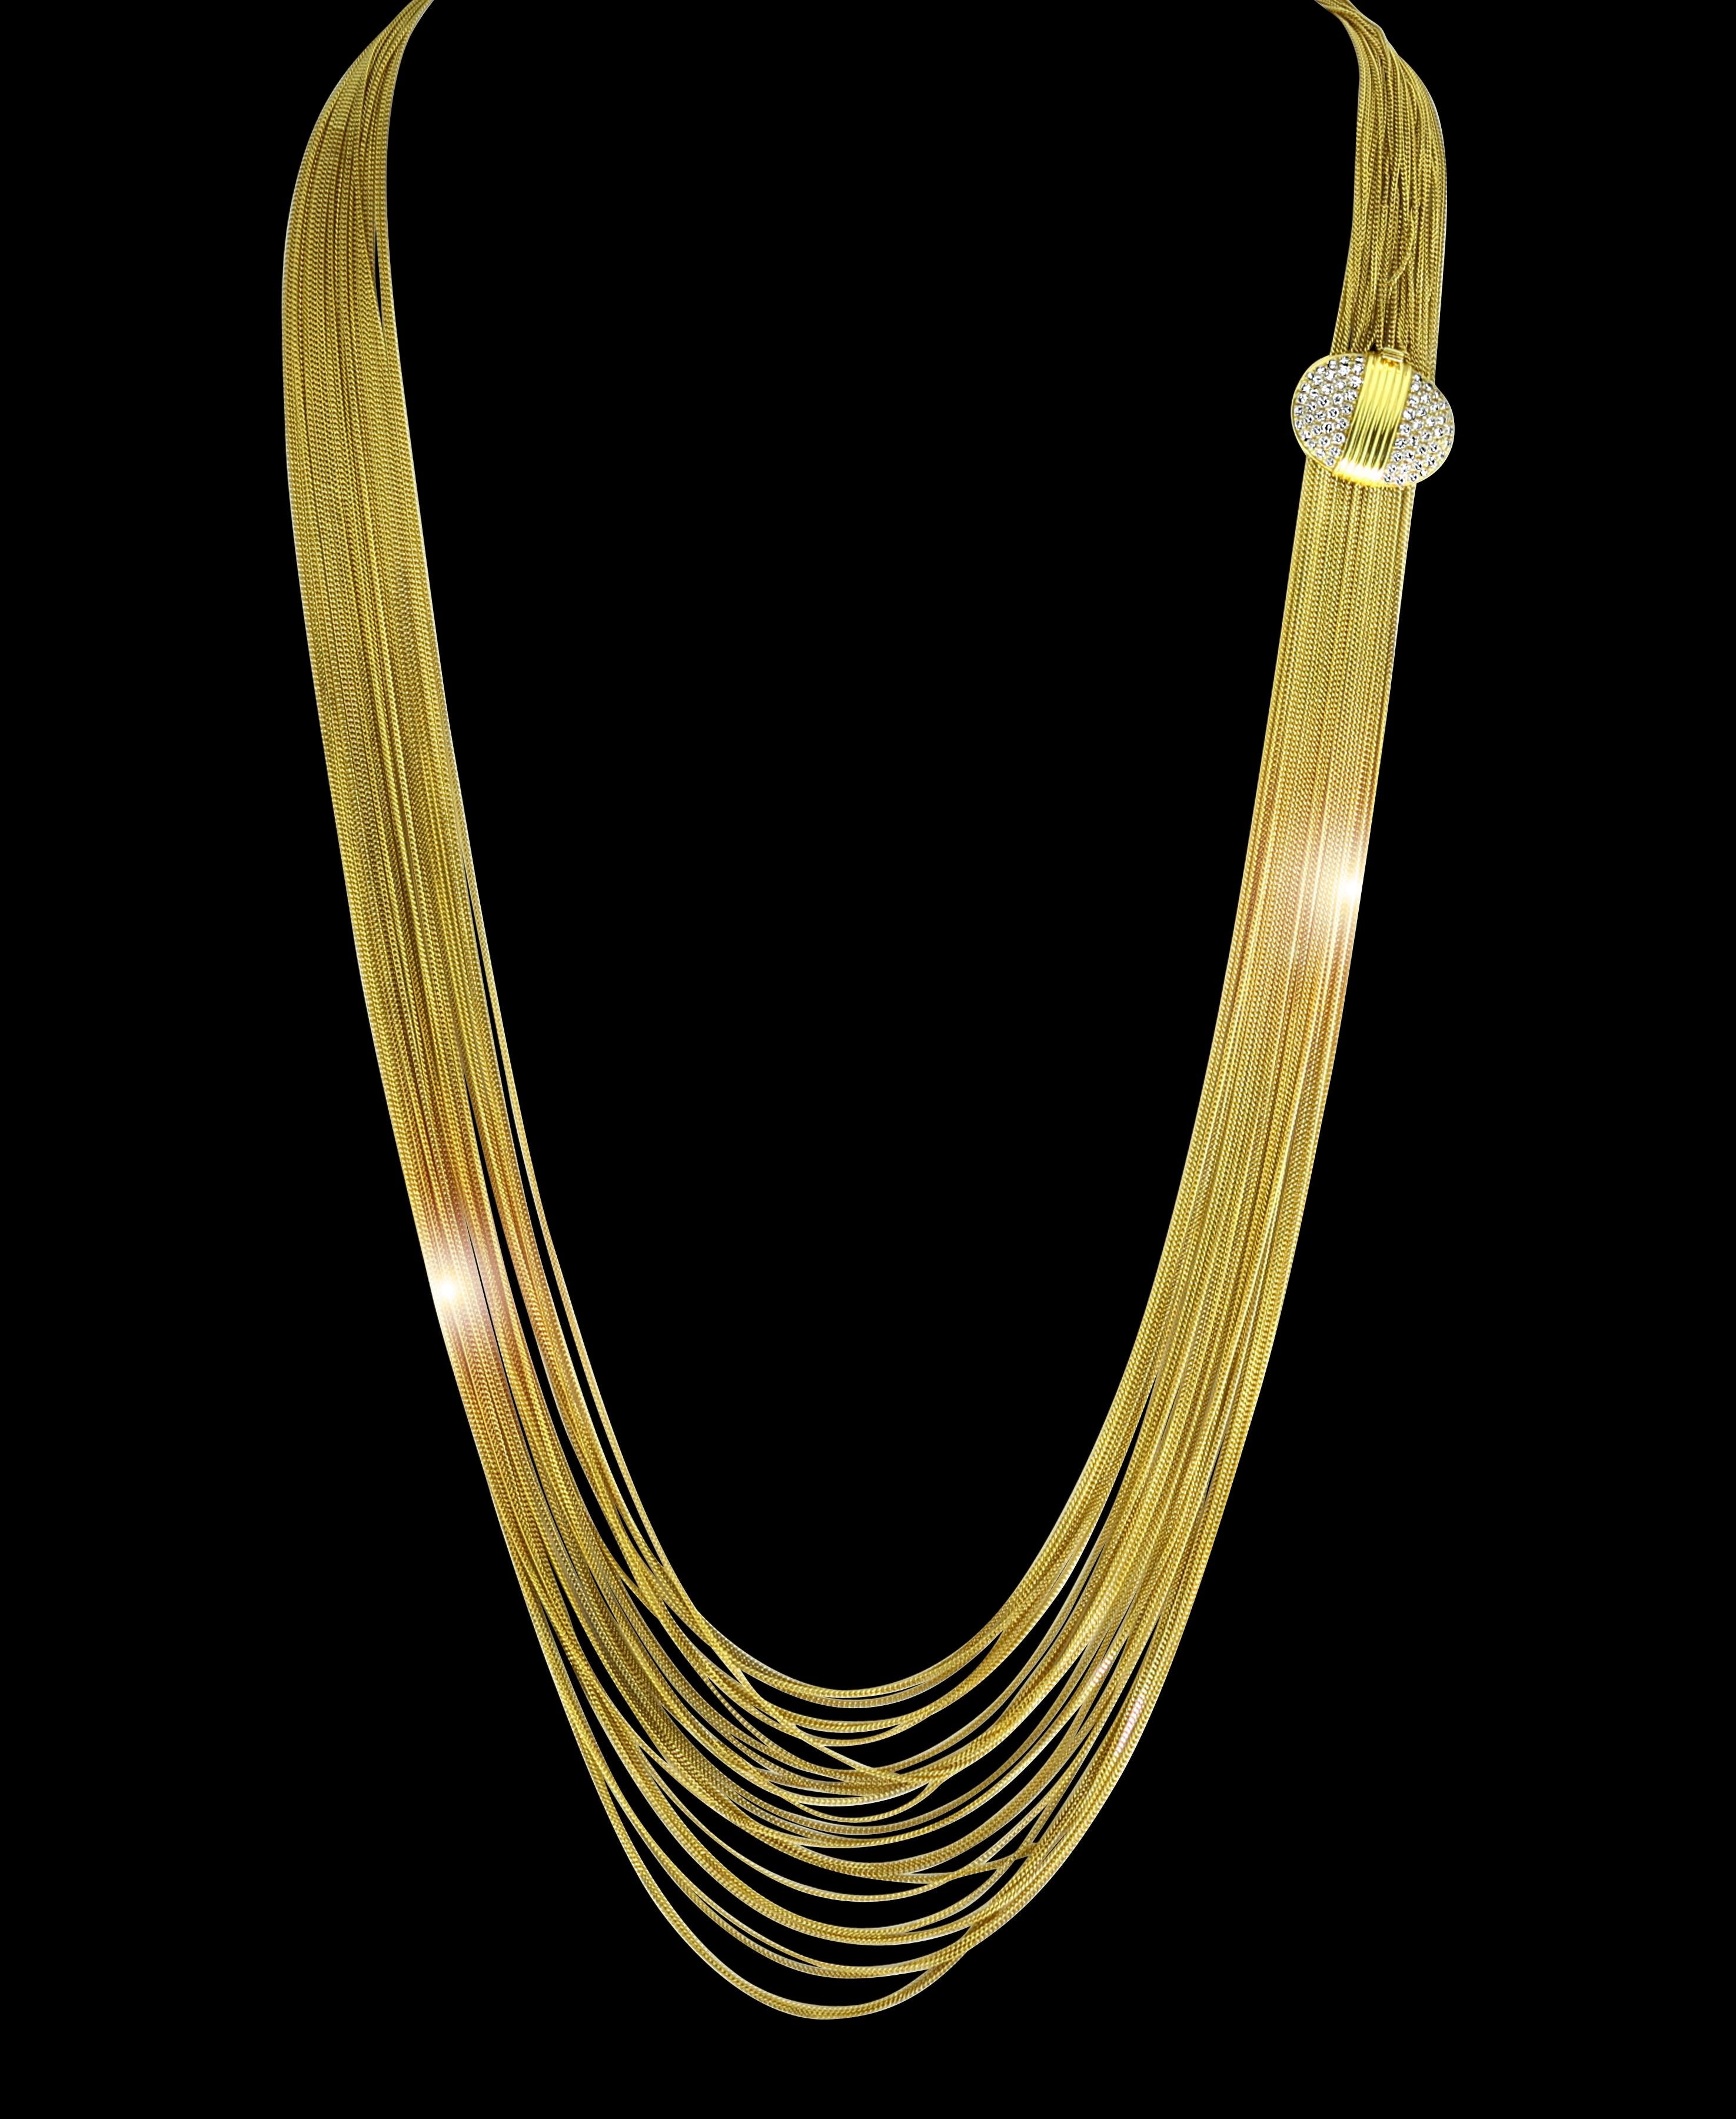 100 Gm 18 Karat Gelbgold Antike Halskette von Designer Gucci , Oper Länge 
Stufenförmiges Lariat mit 27 mehrsträngigen Goldketten, die alle mit einem diamantenbesetzten Verschluss verbunden sind.
Diamanten: ca. 3 ct, Reinheit VS und Farbe G.
Sehr